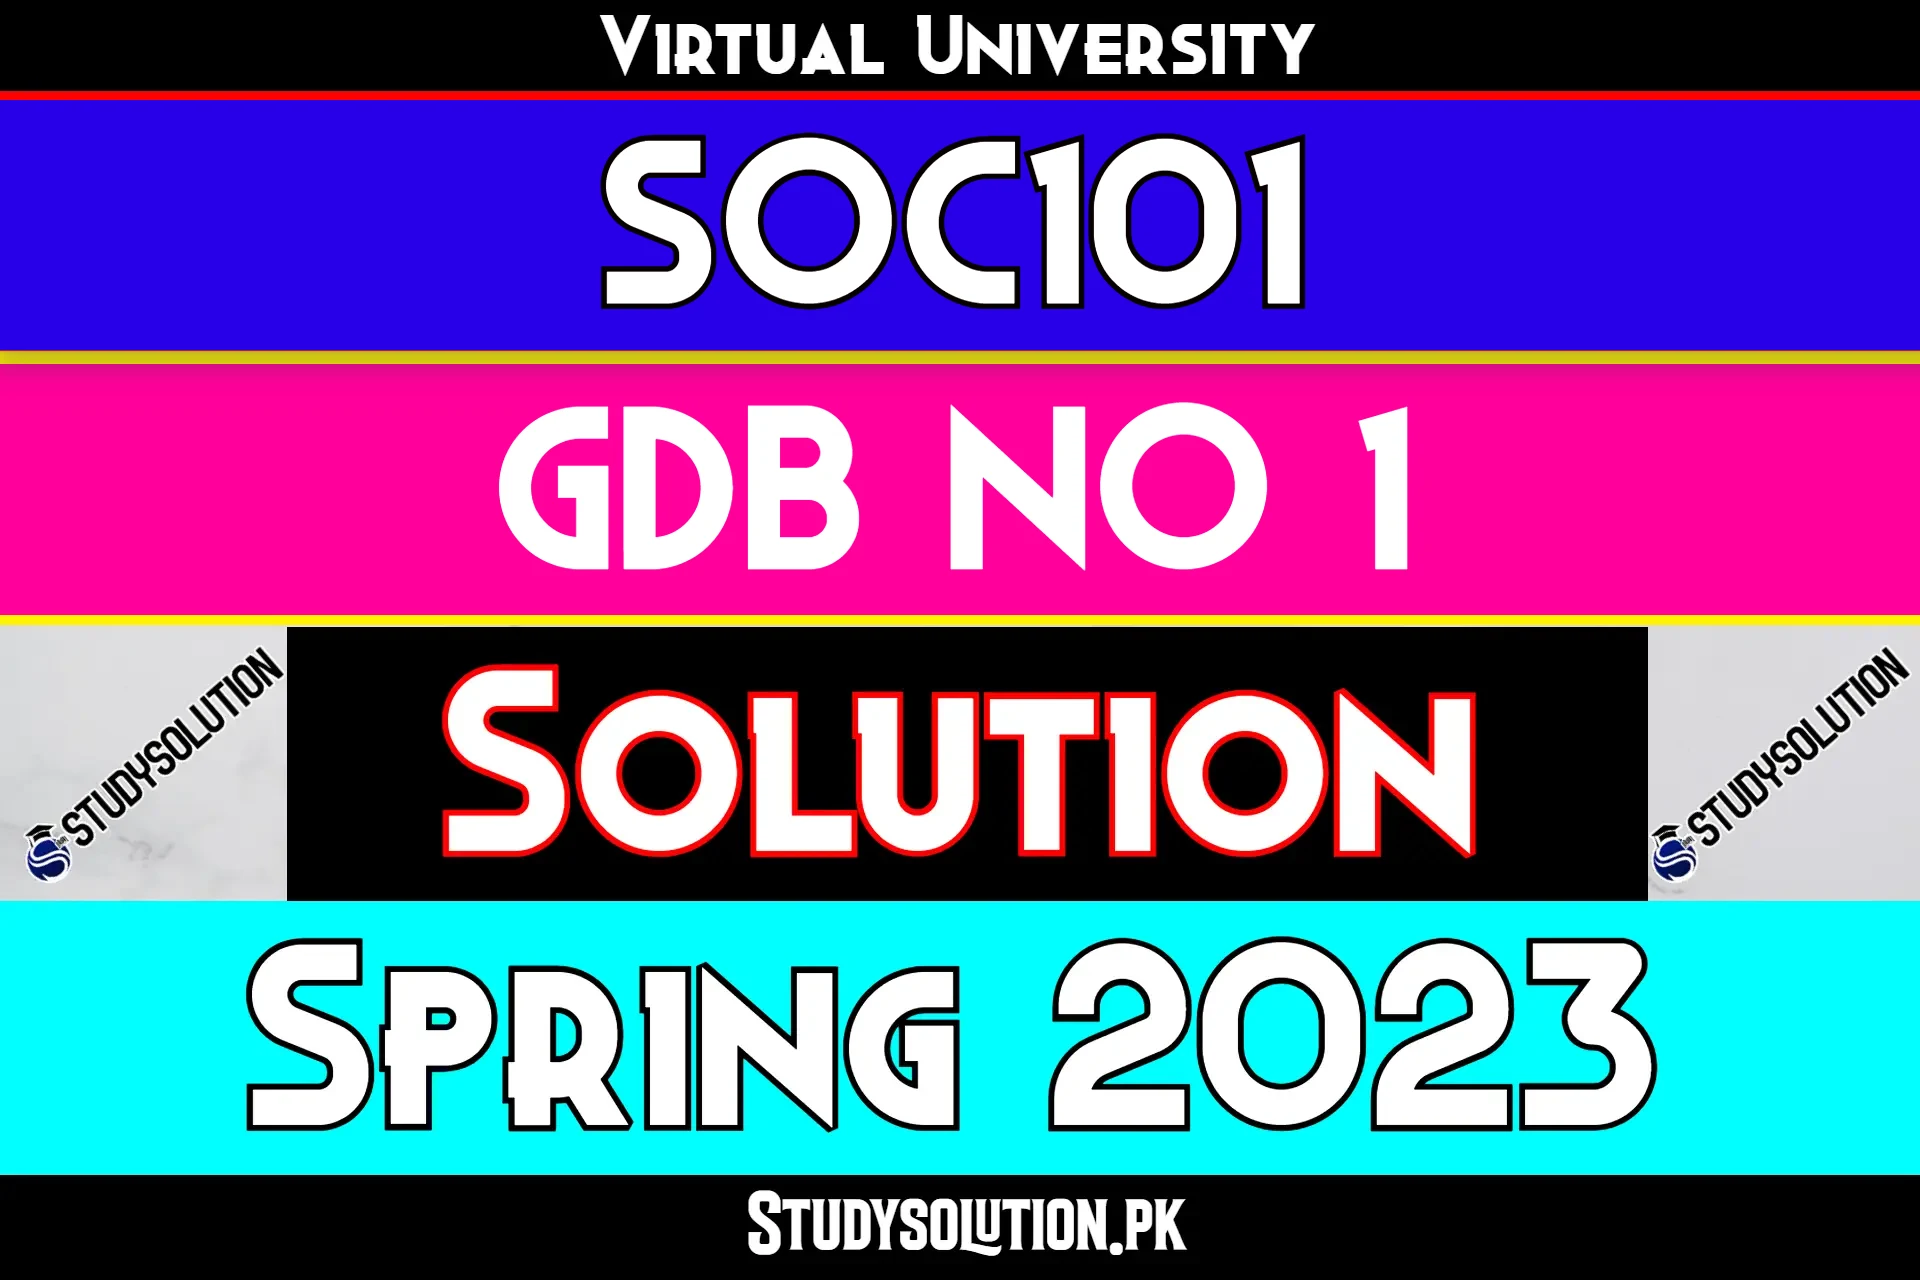 SOC101 GDB No 1 Solution Spring 2023